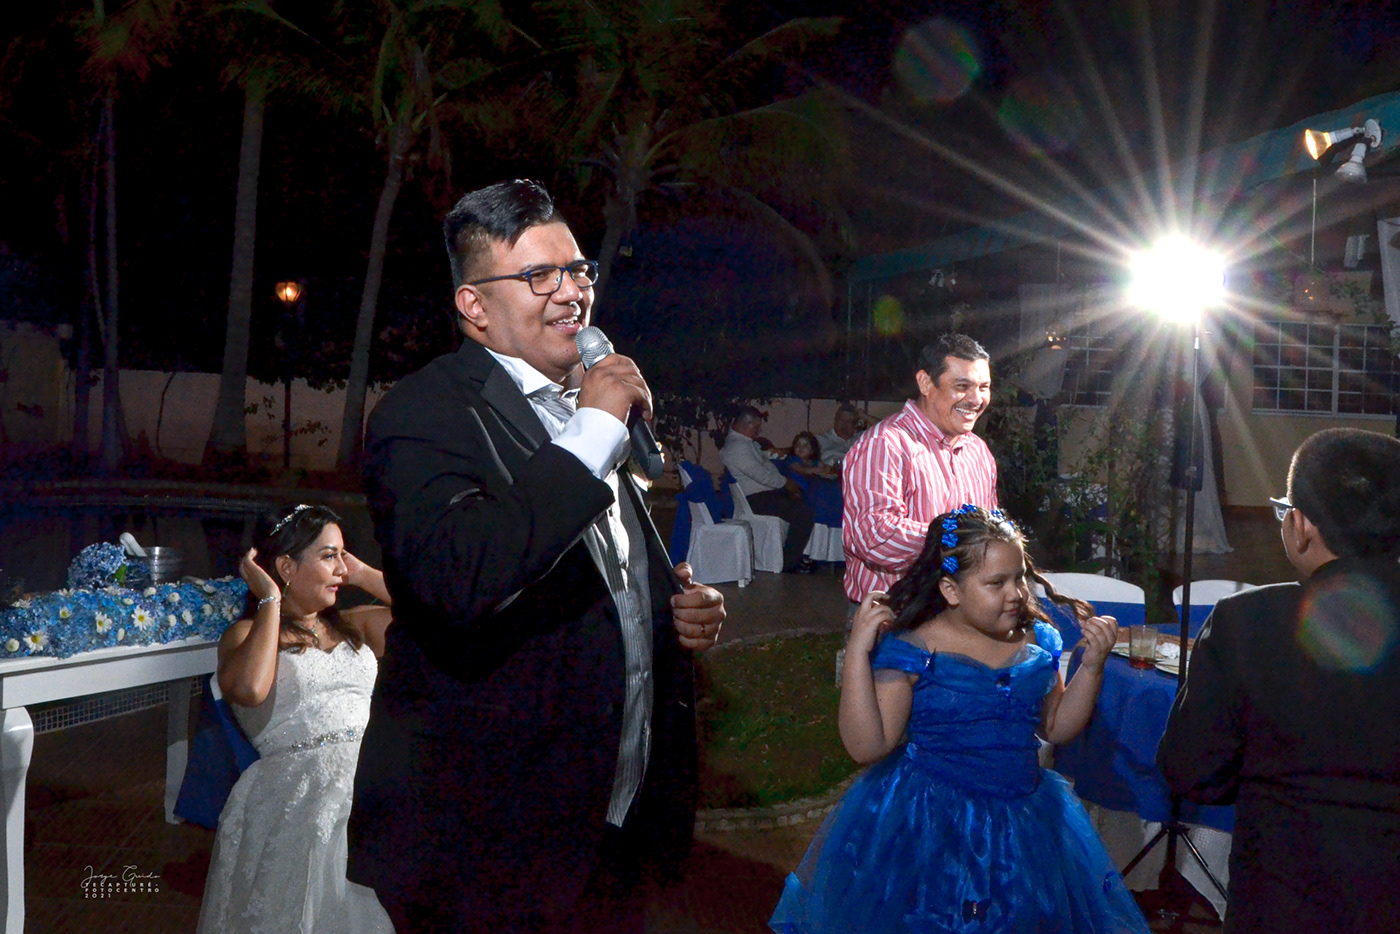 Boda católico Ceremonia creativo elegante Fotografia nicaragua Novios photographyc wedding